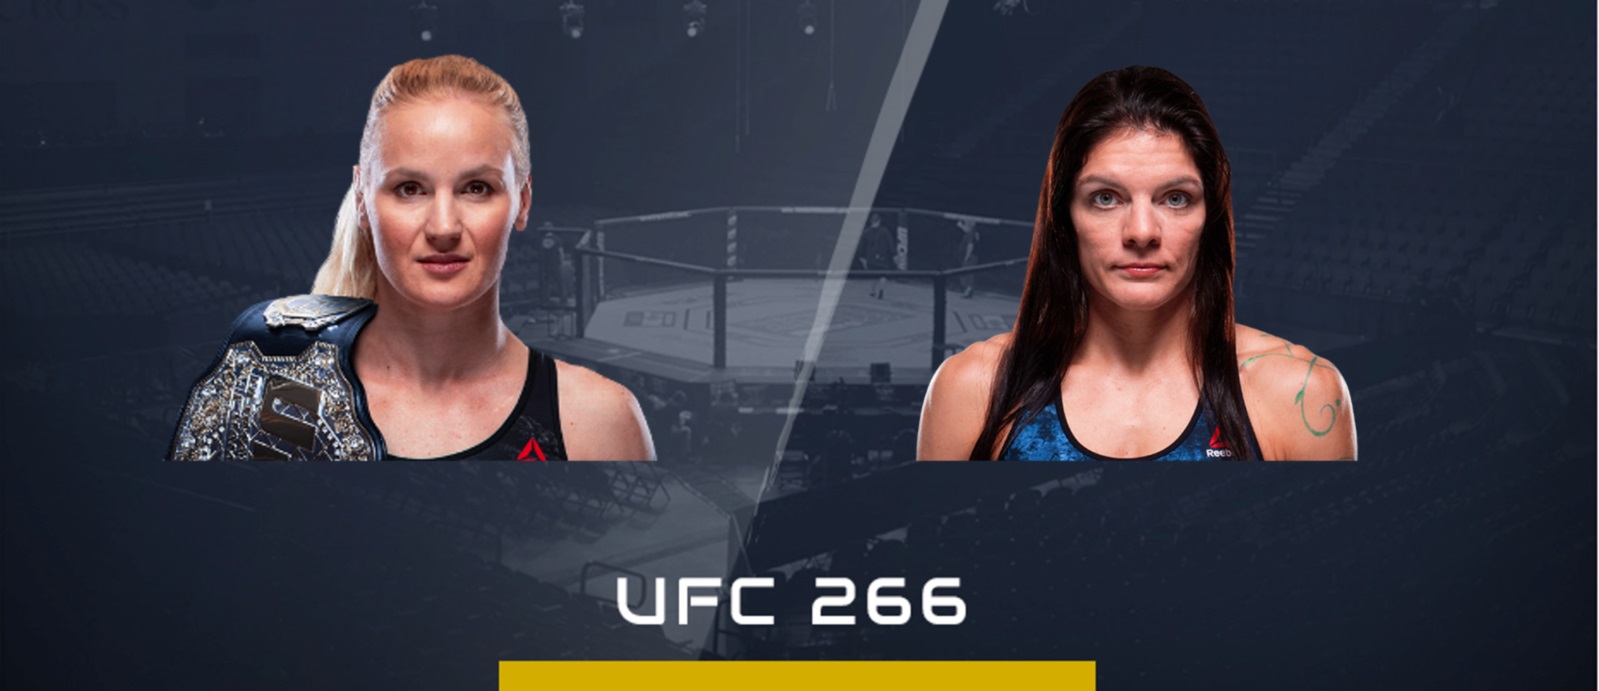 Valentina Shevchenko vs Lauren Murphy UFC 266 Free Live Reddit Streams